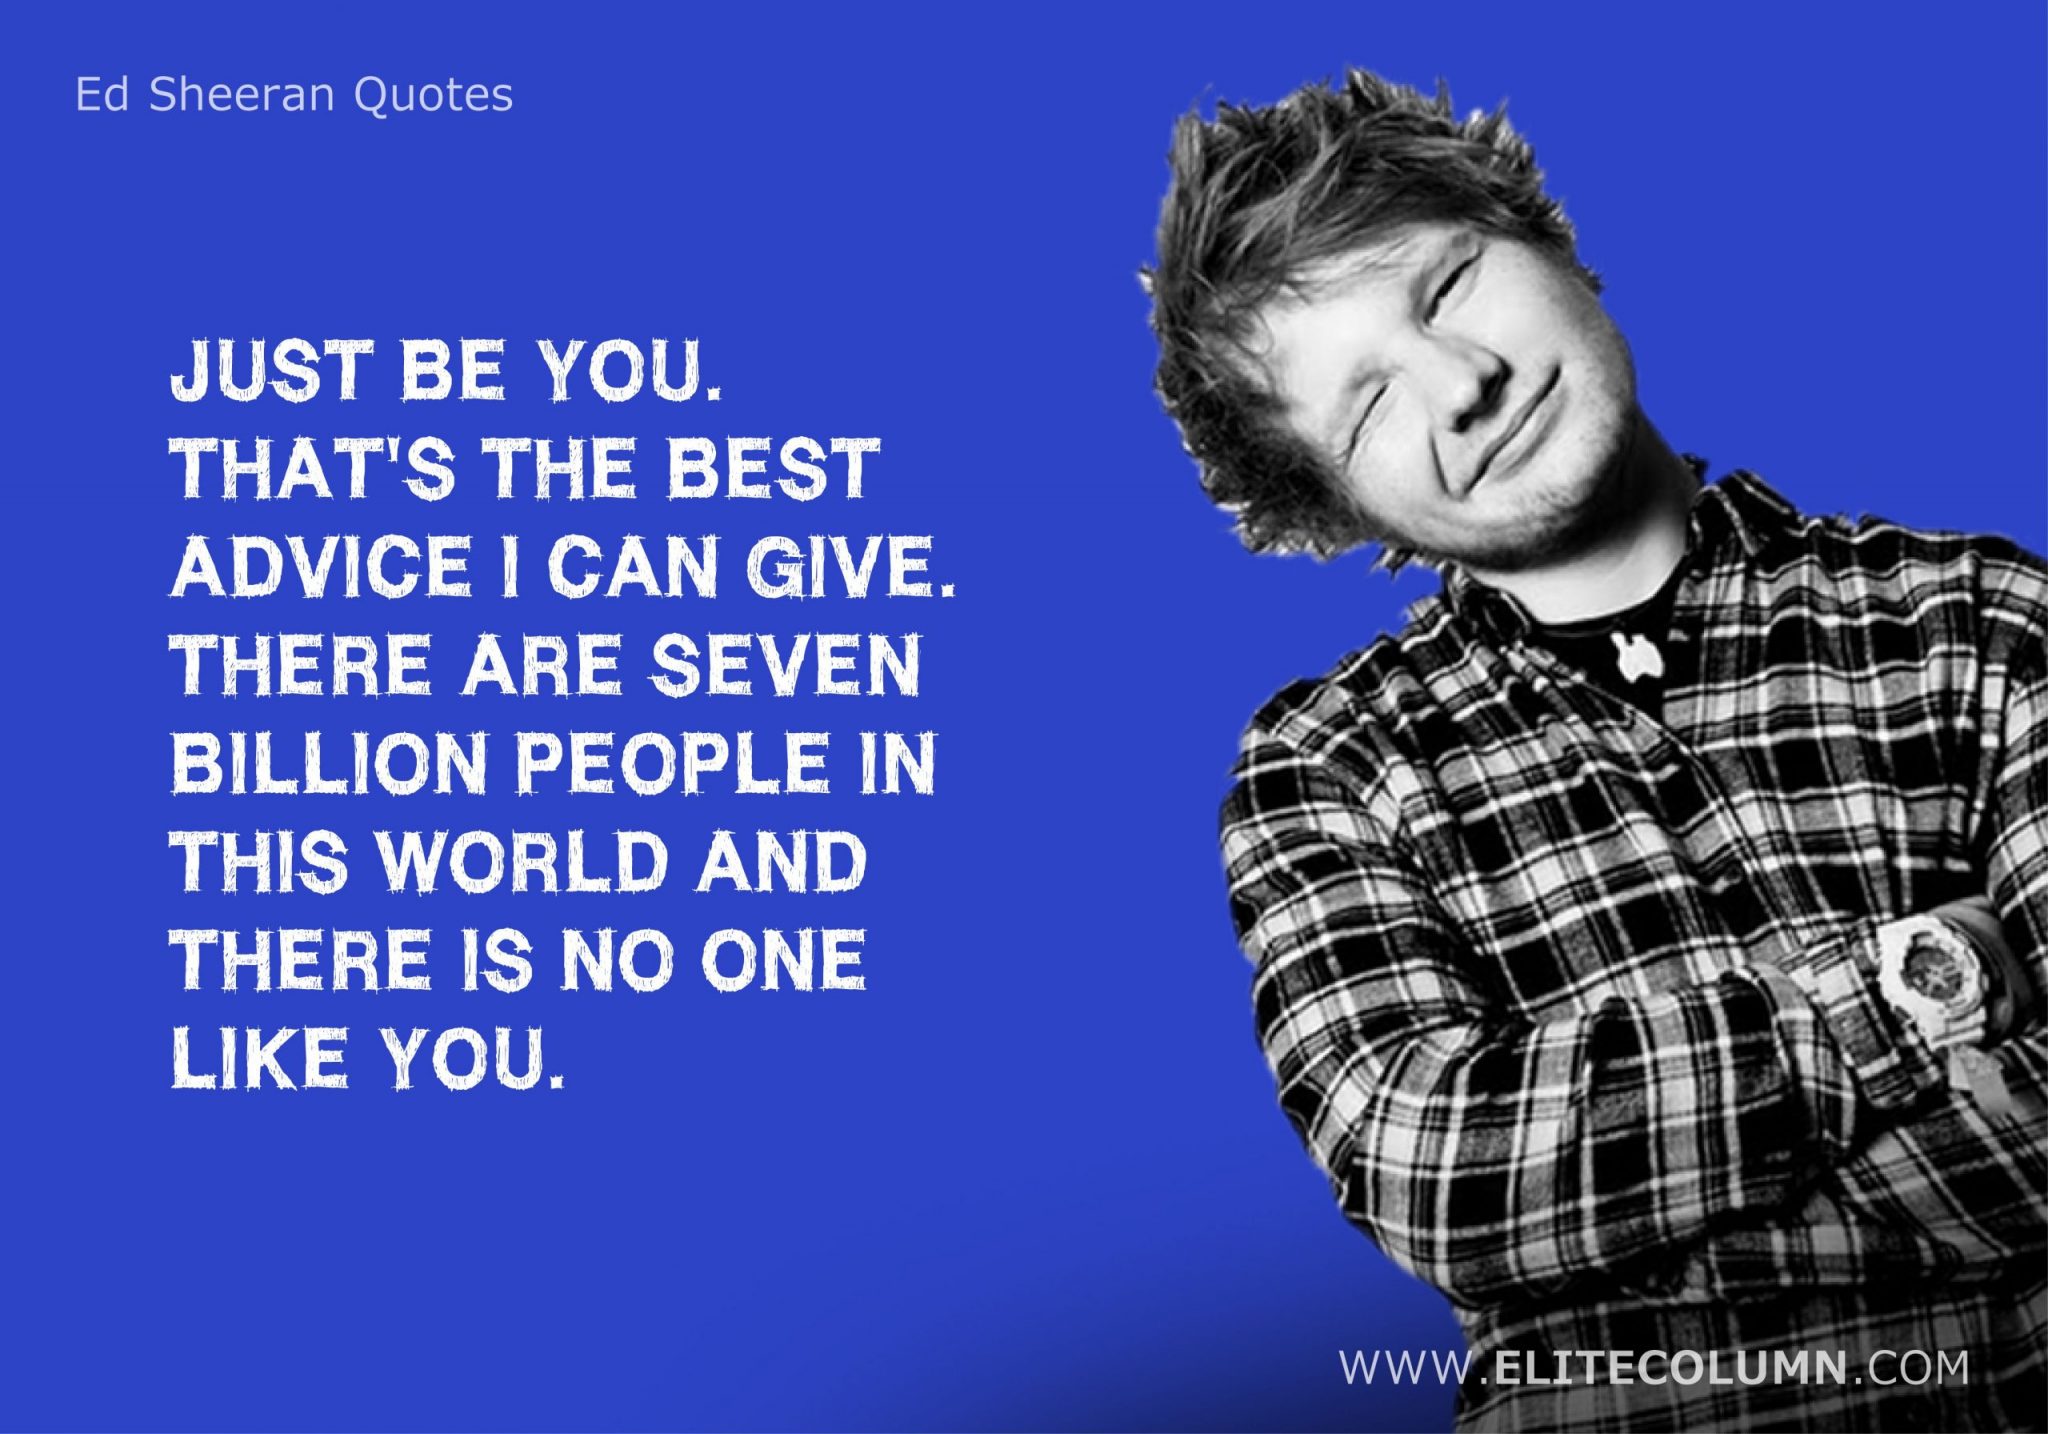 Ed Sheeran Quotes (20)